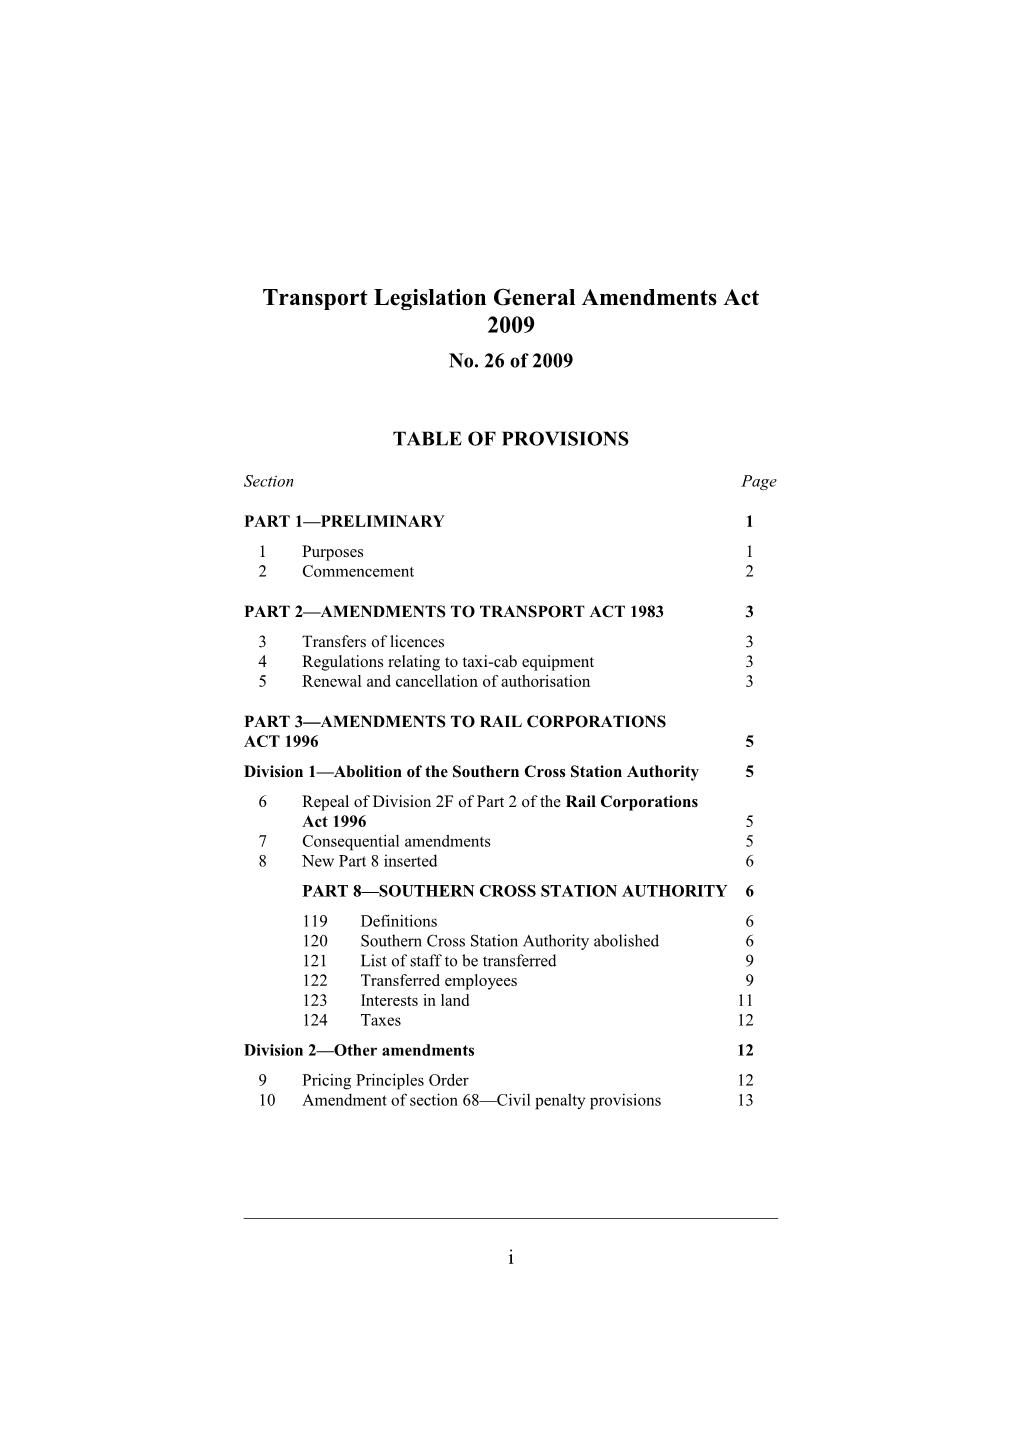 Transport Legislation General Amendments Act 2009